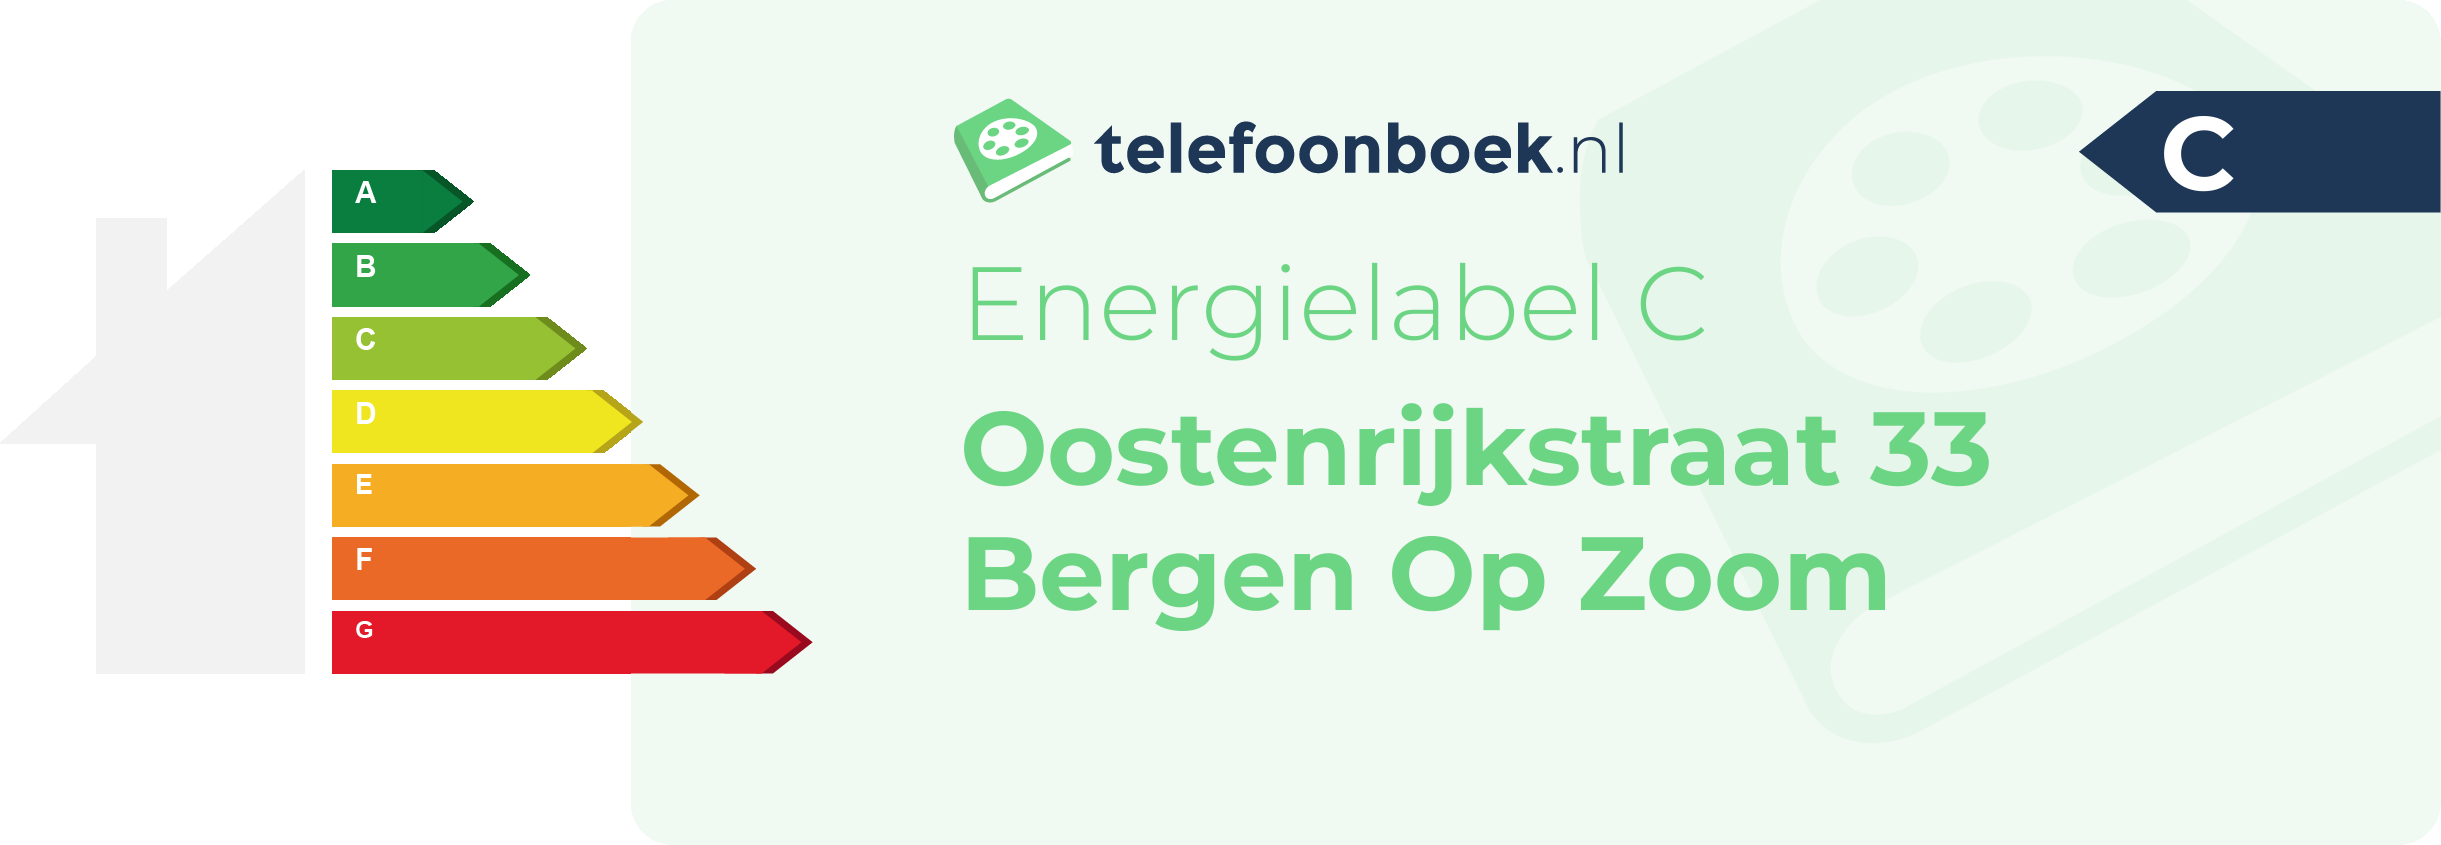 Energielabel Oostenrijkstraat 33 Bergen Op Zoom